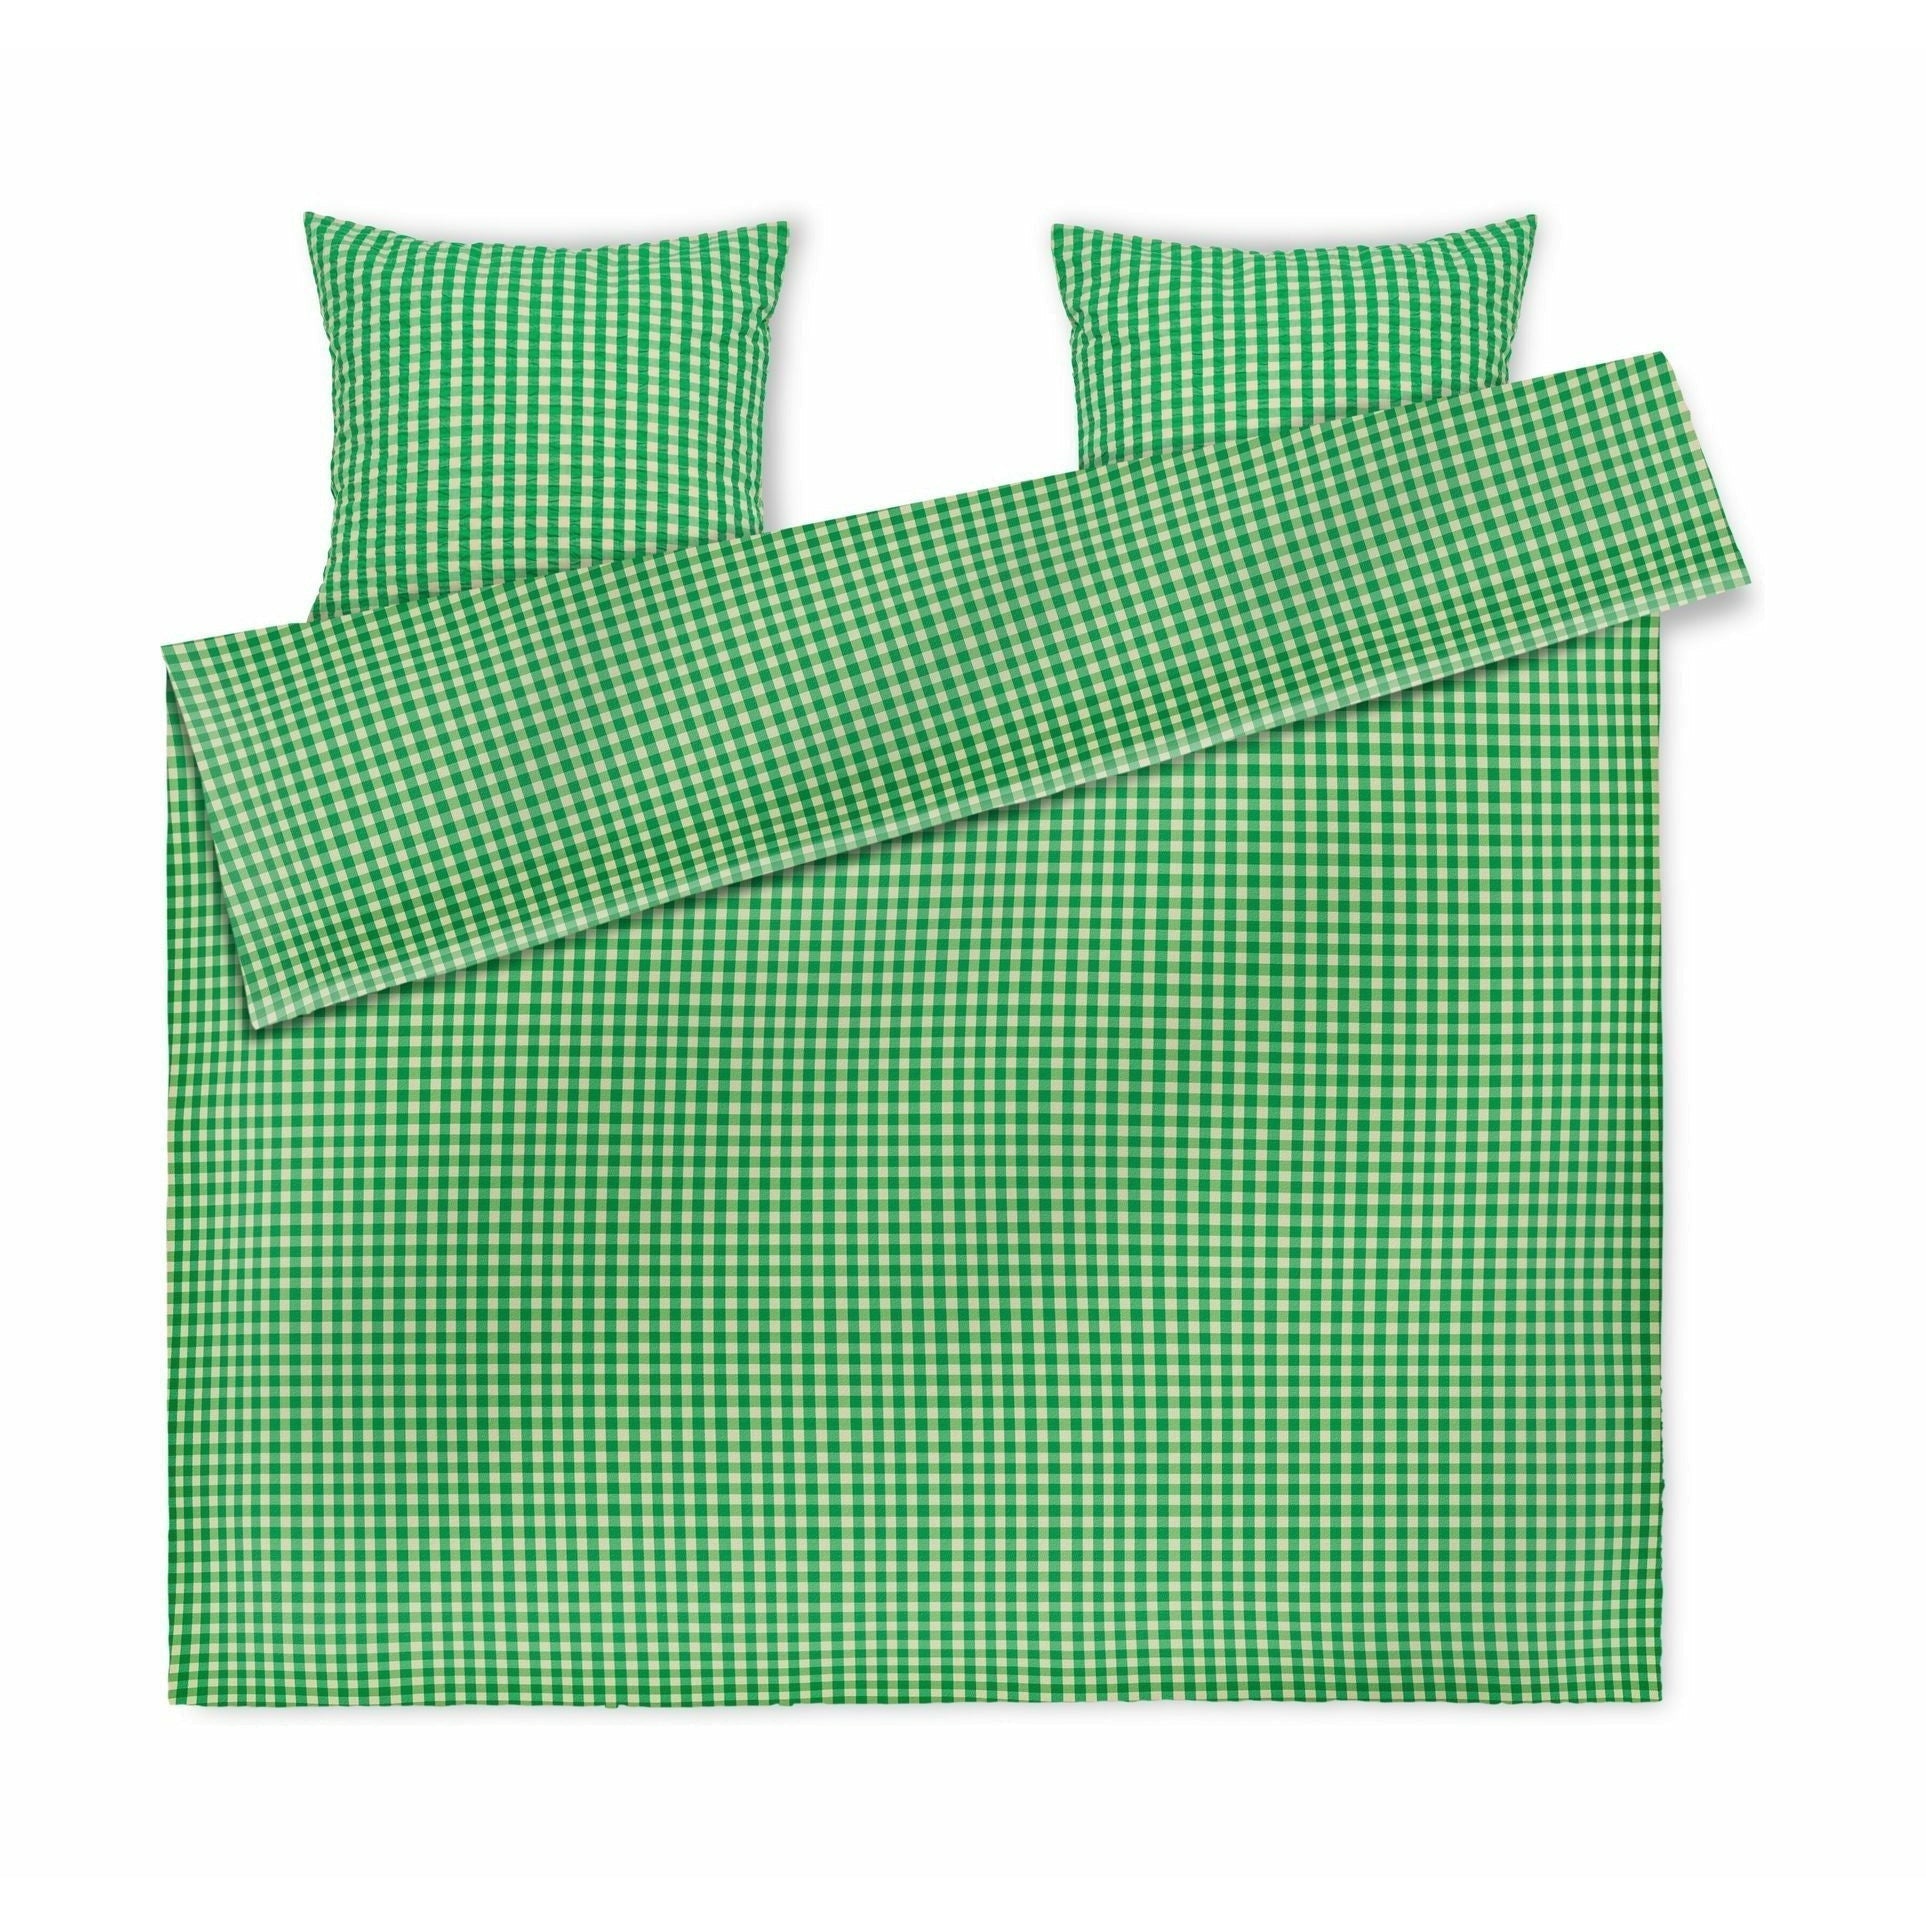 Juna Bæk & Wave Bedding 200x220 cm, grön/sand